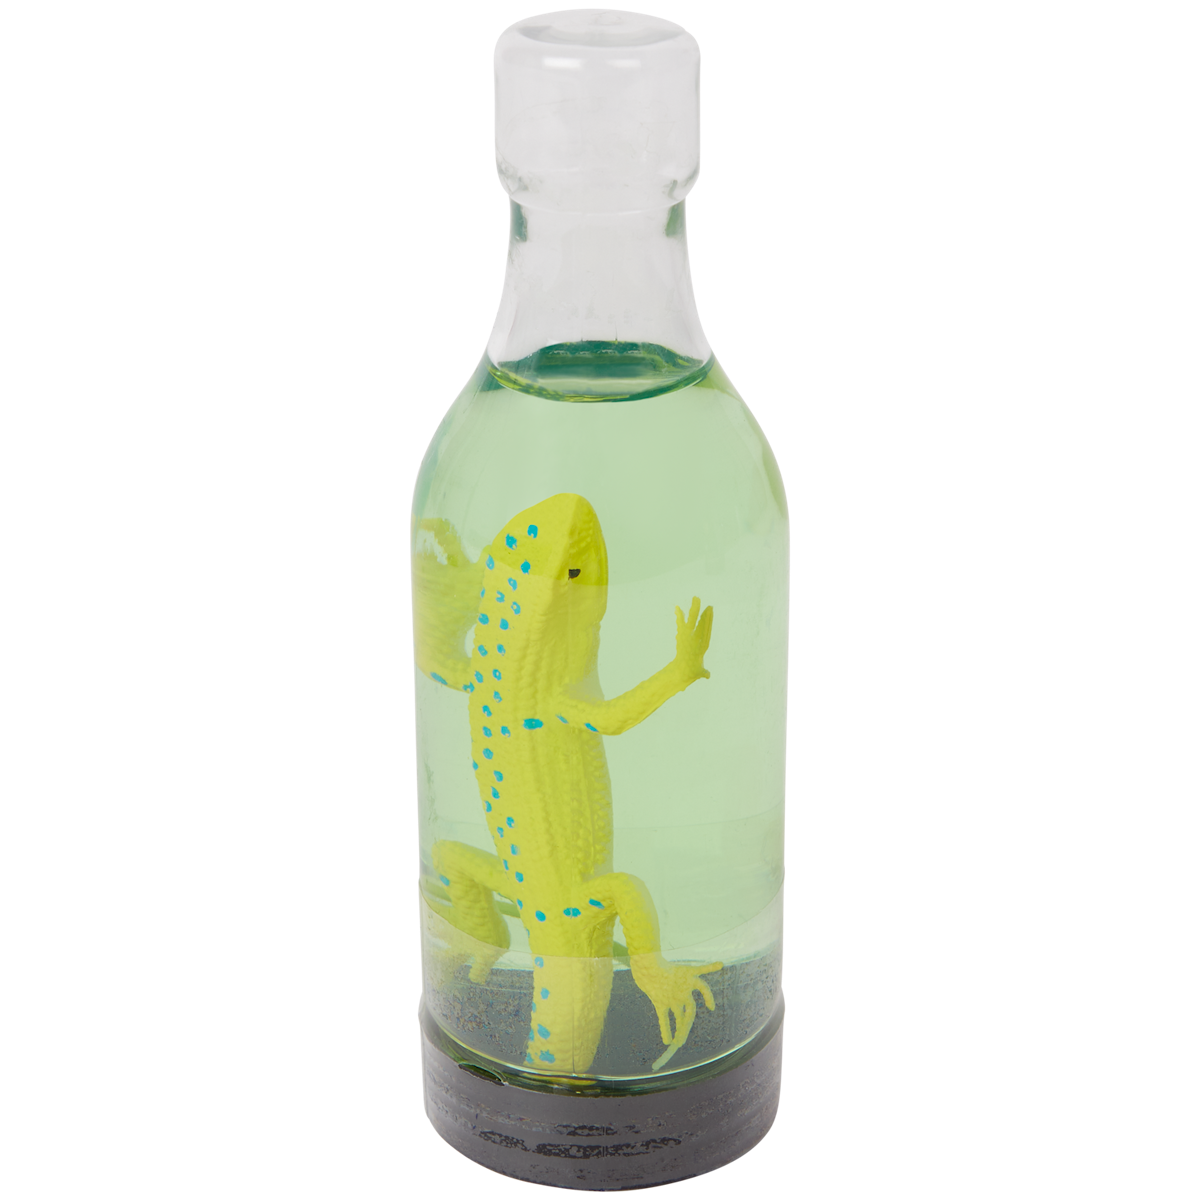 Animale in bottiglia